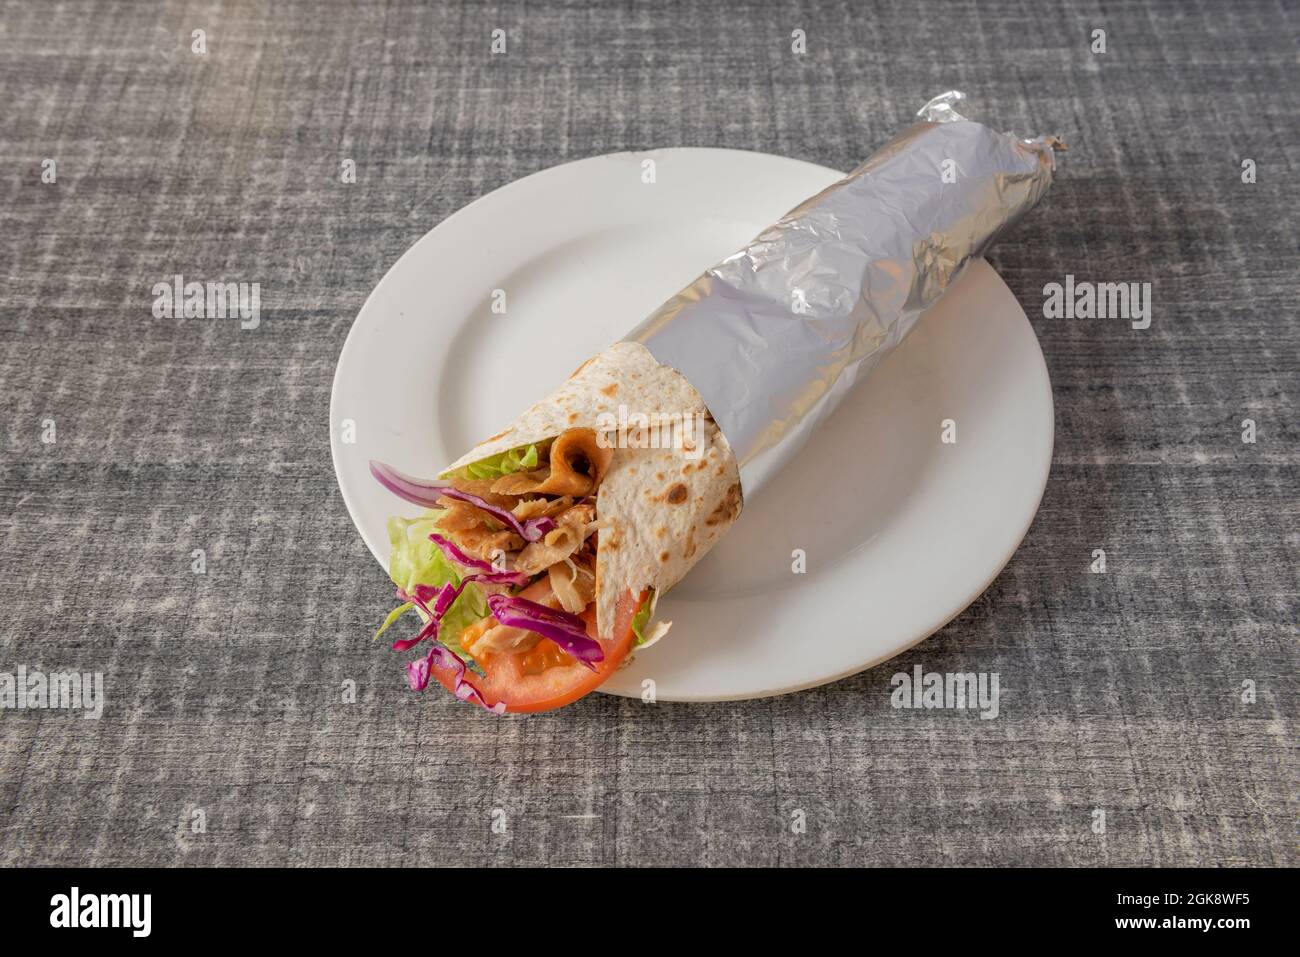 Blé dur typique d'un restaurant populaire kebab avec de la viande d'agneau du rouleau avec l'oignon rouge, le chou vert, la tomate et la laitue enveloppés dans du papier aluminium Banque D'Images